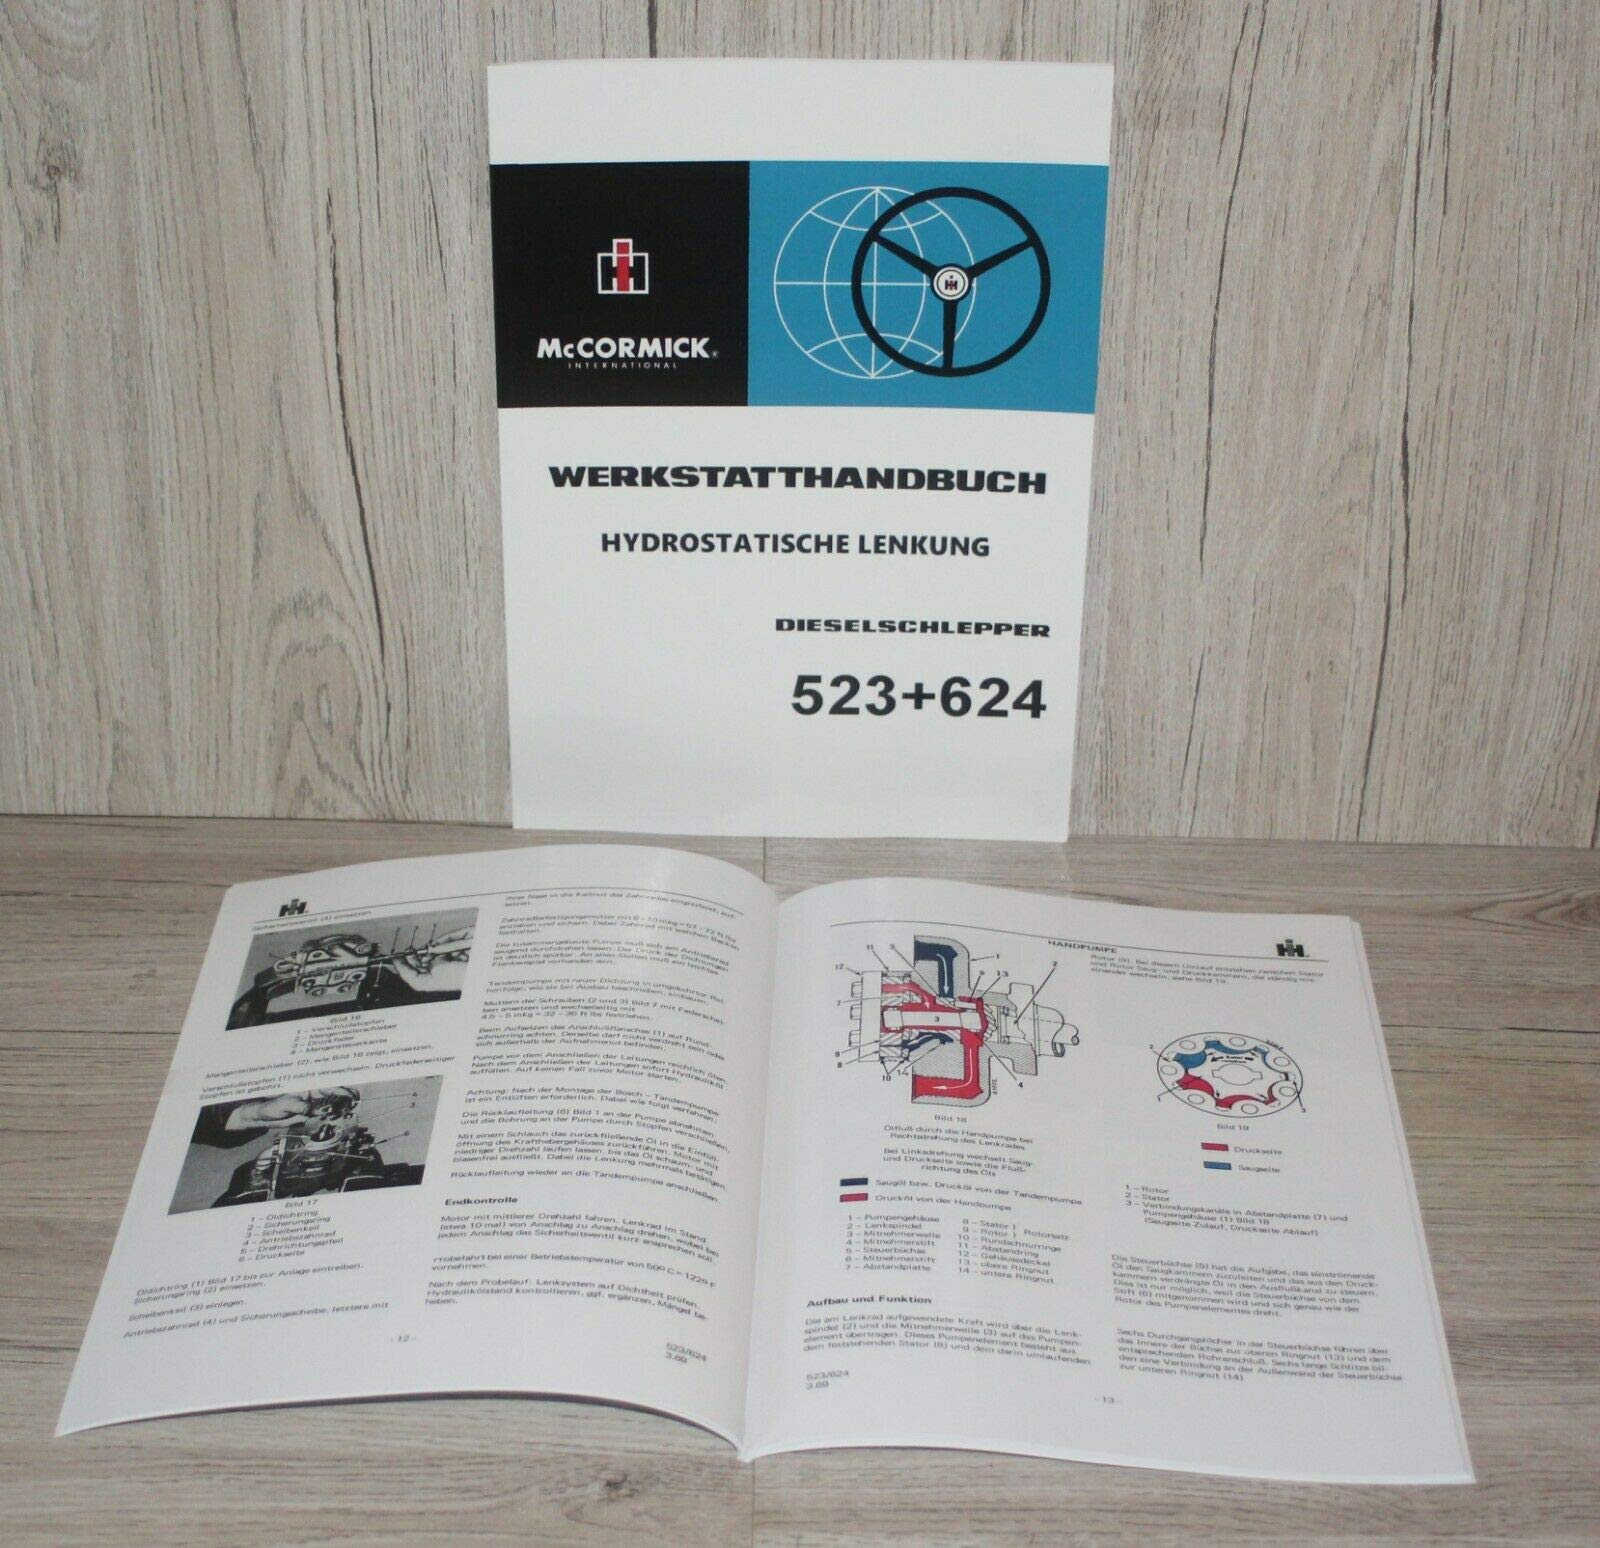 IHC MC CORMICK Werkstatthandbuch Hydrostatische Lenkung Traktor 523 624 auch passend für 553 654 724 824 da Baugleich von Eil Bulldog Versand